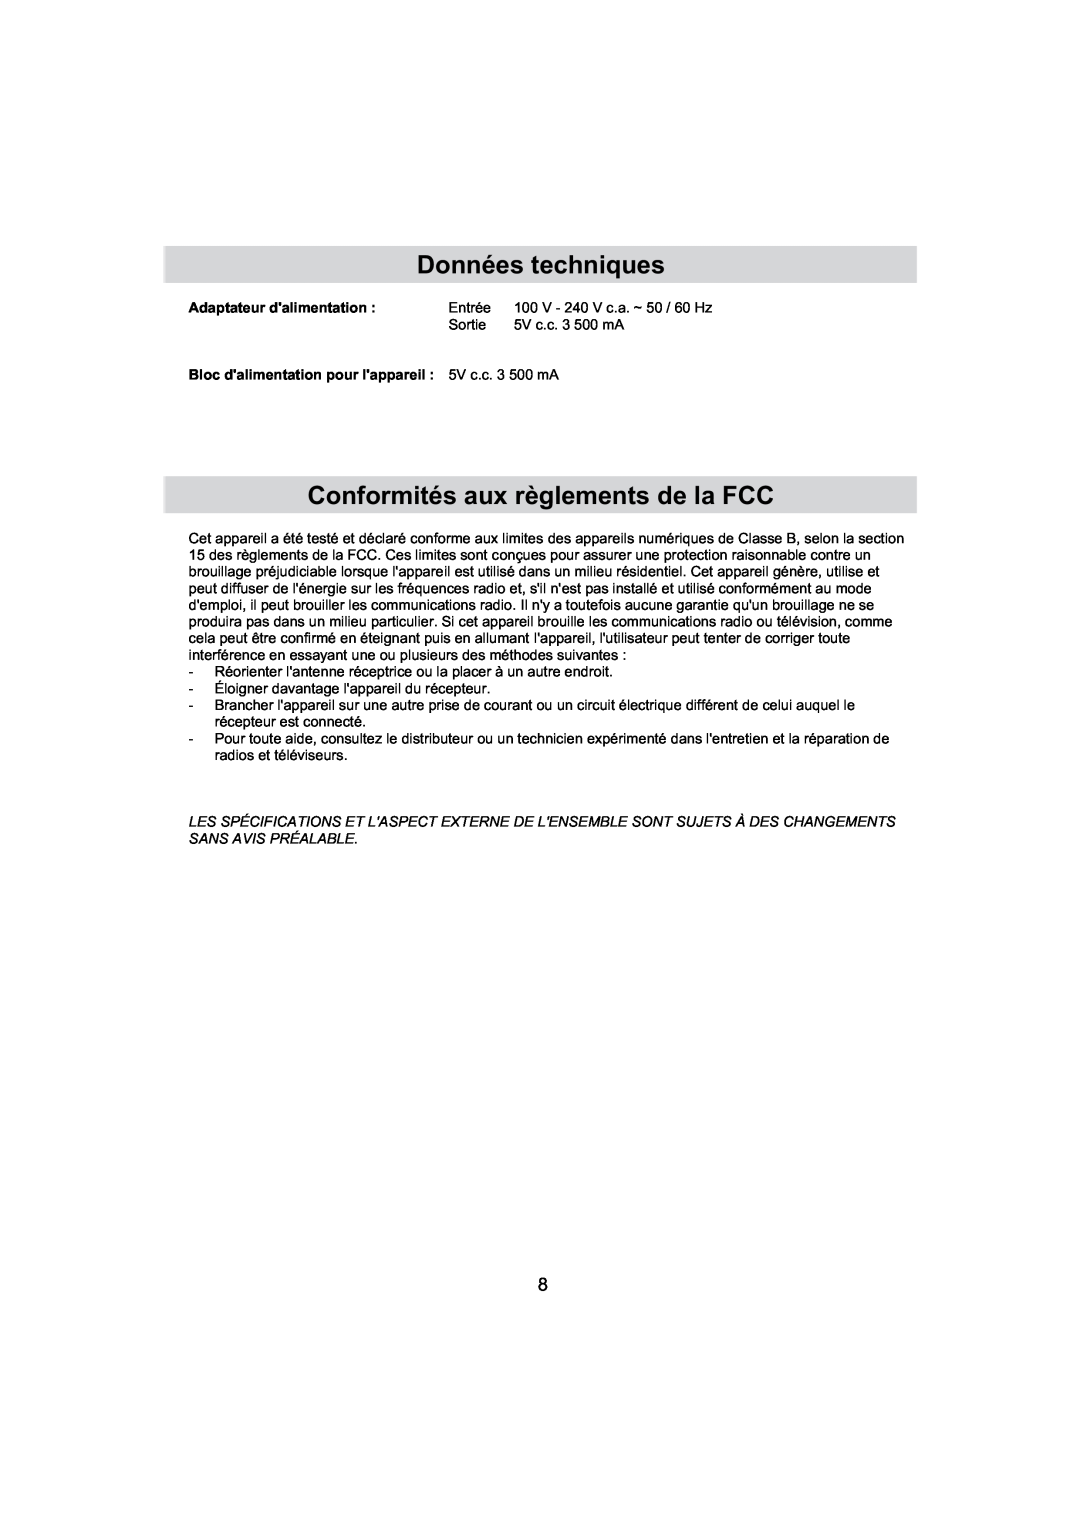 Haier IPD-01 manual Données techniques, Conformités aux règlements de la FCC, Adaptateur dalimentation 